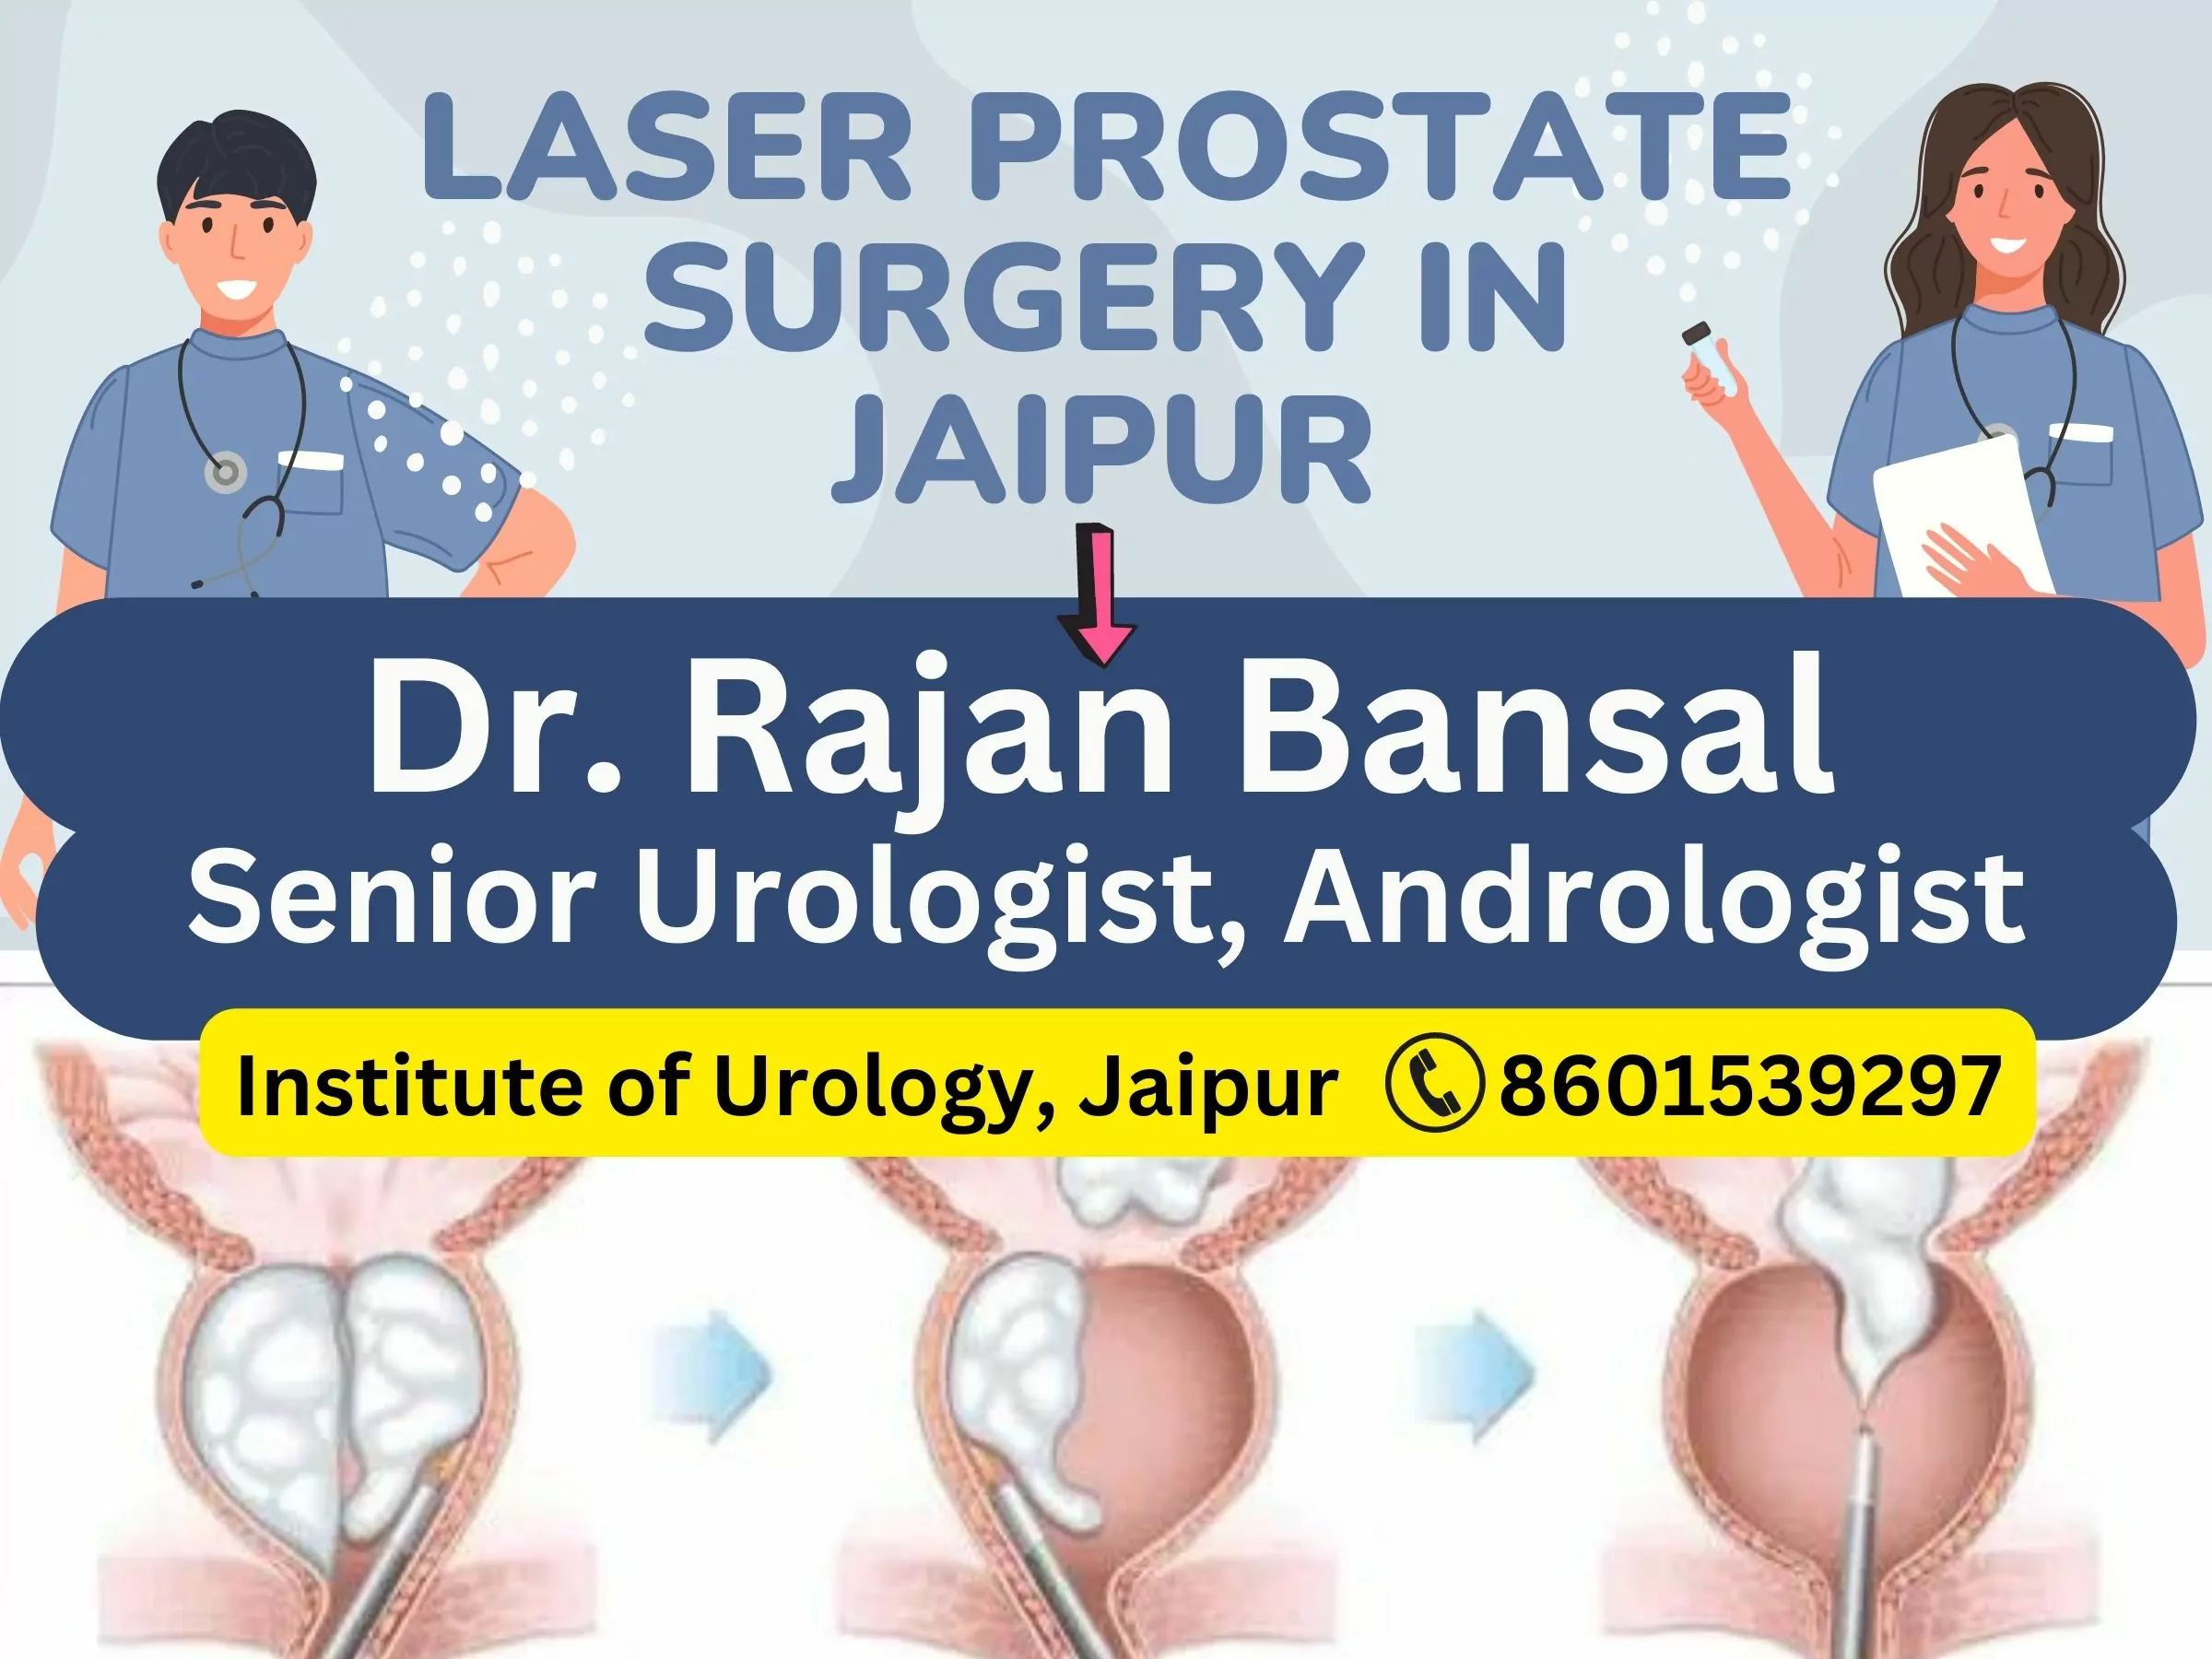 Dr. Rajan Bansal Best Doctor for Prostate Surgery in Jaipur BPH Prostate enlargement treatment